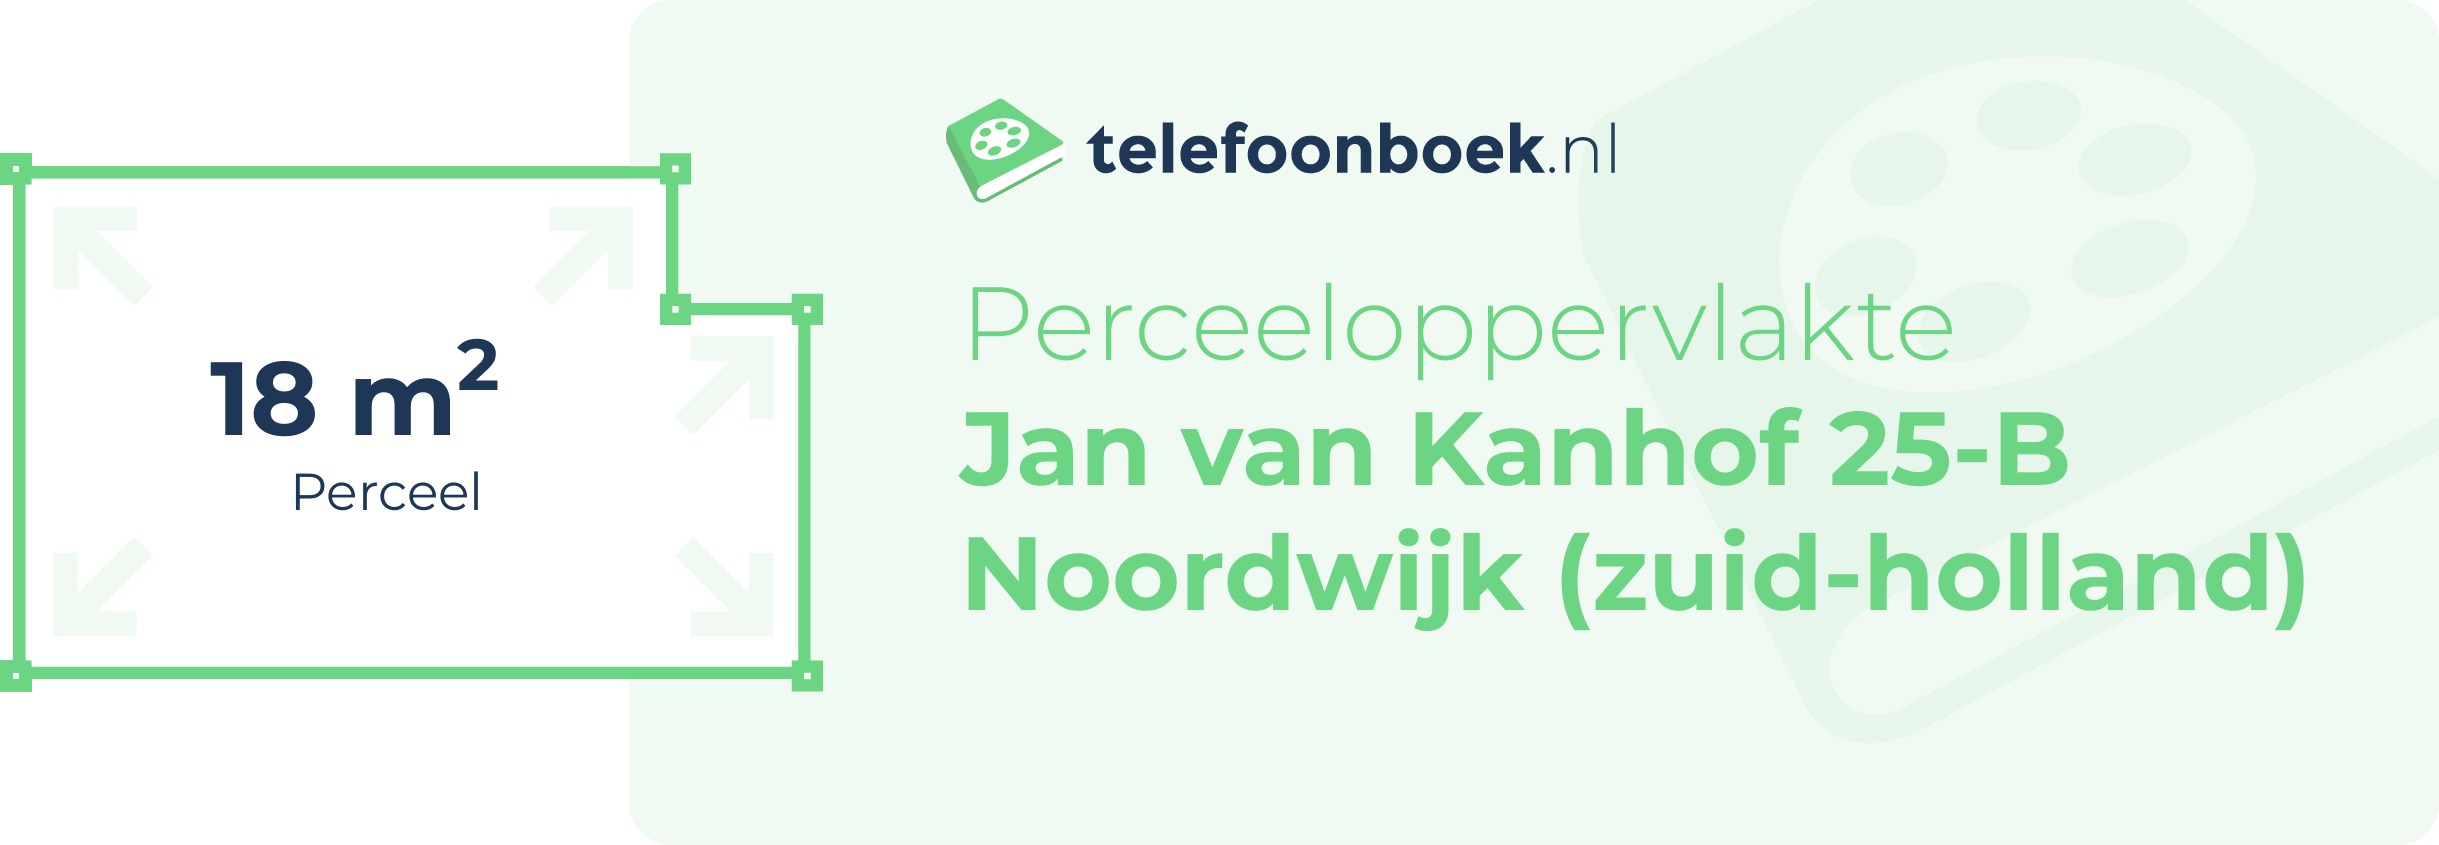 Perceeloppervlakte Jan Van Kanhof 25-B Noordwijk (Zuid-Holland)